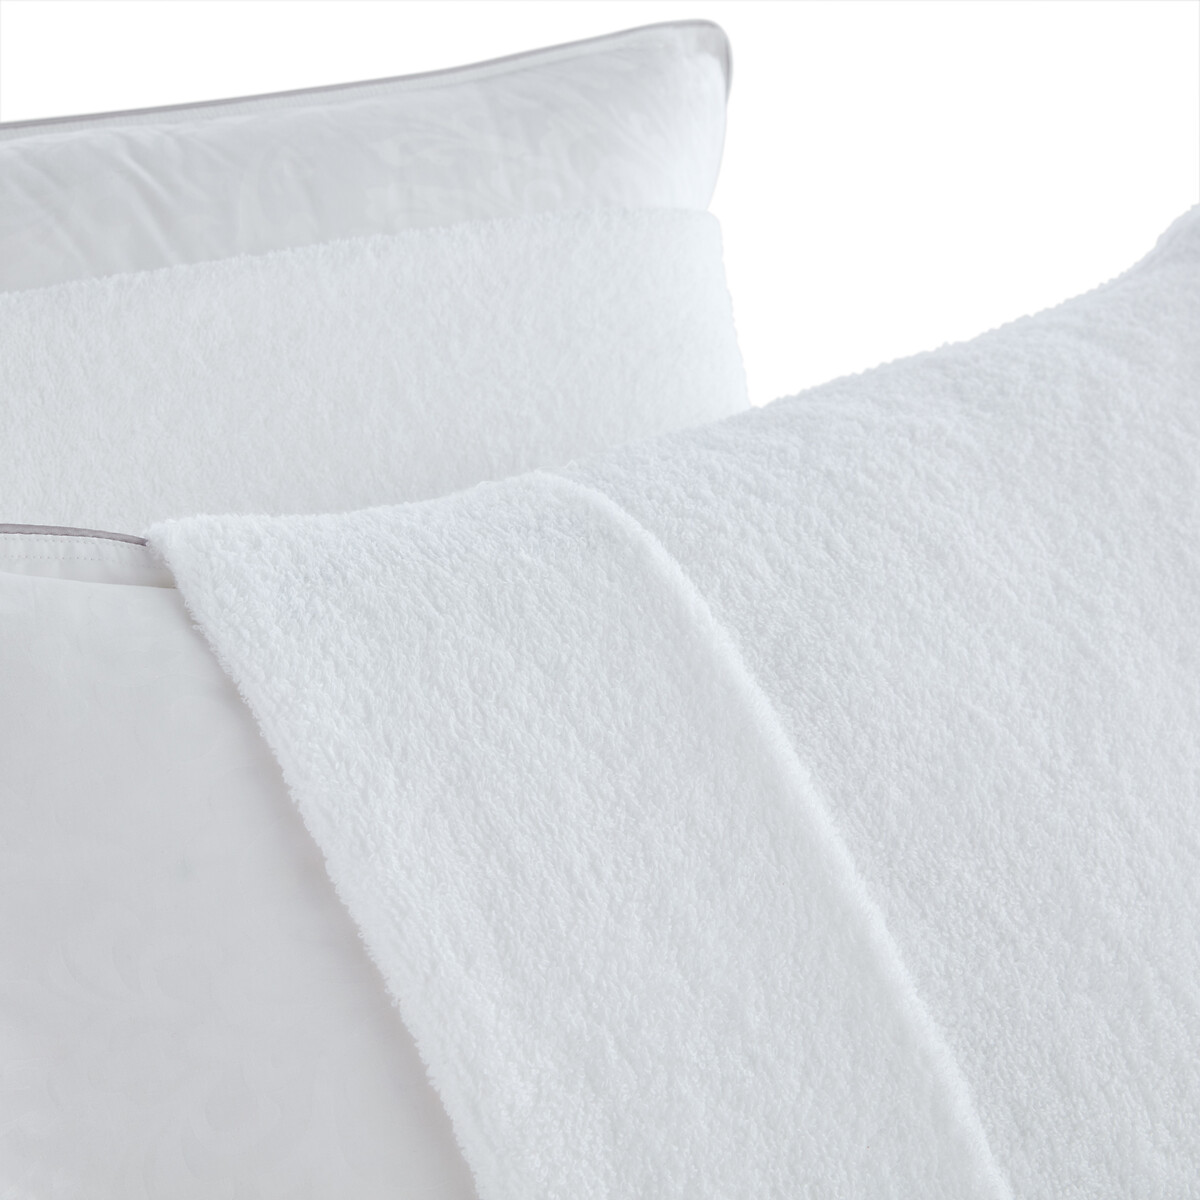 Чехол La Redoute На подушку с обработкой от постельных клопов 50 x 70 см белый, размер 50 x 70 см - фото 2